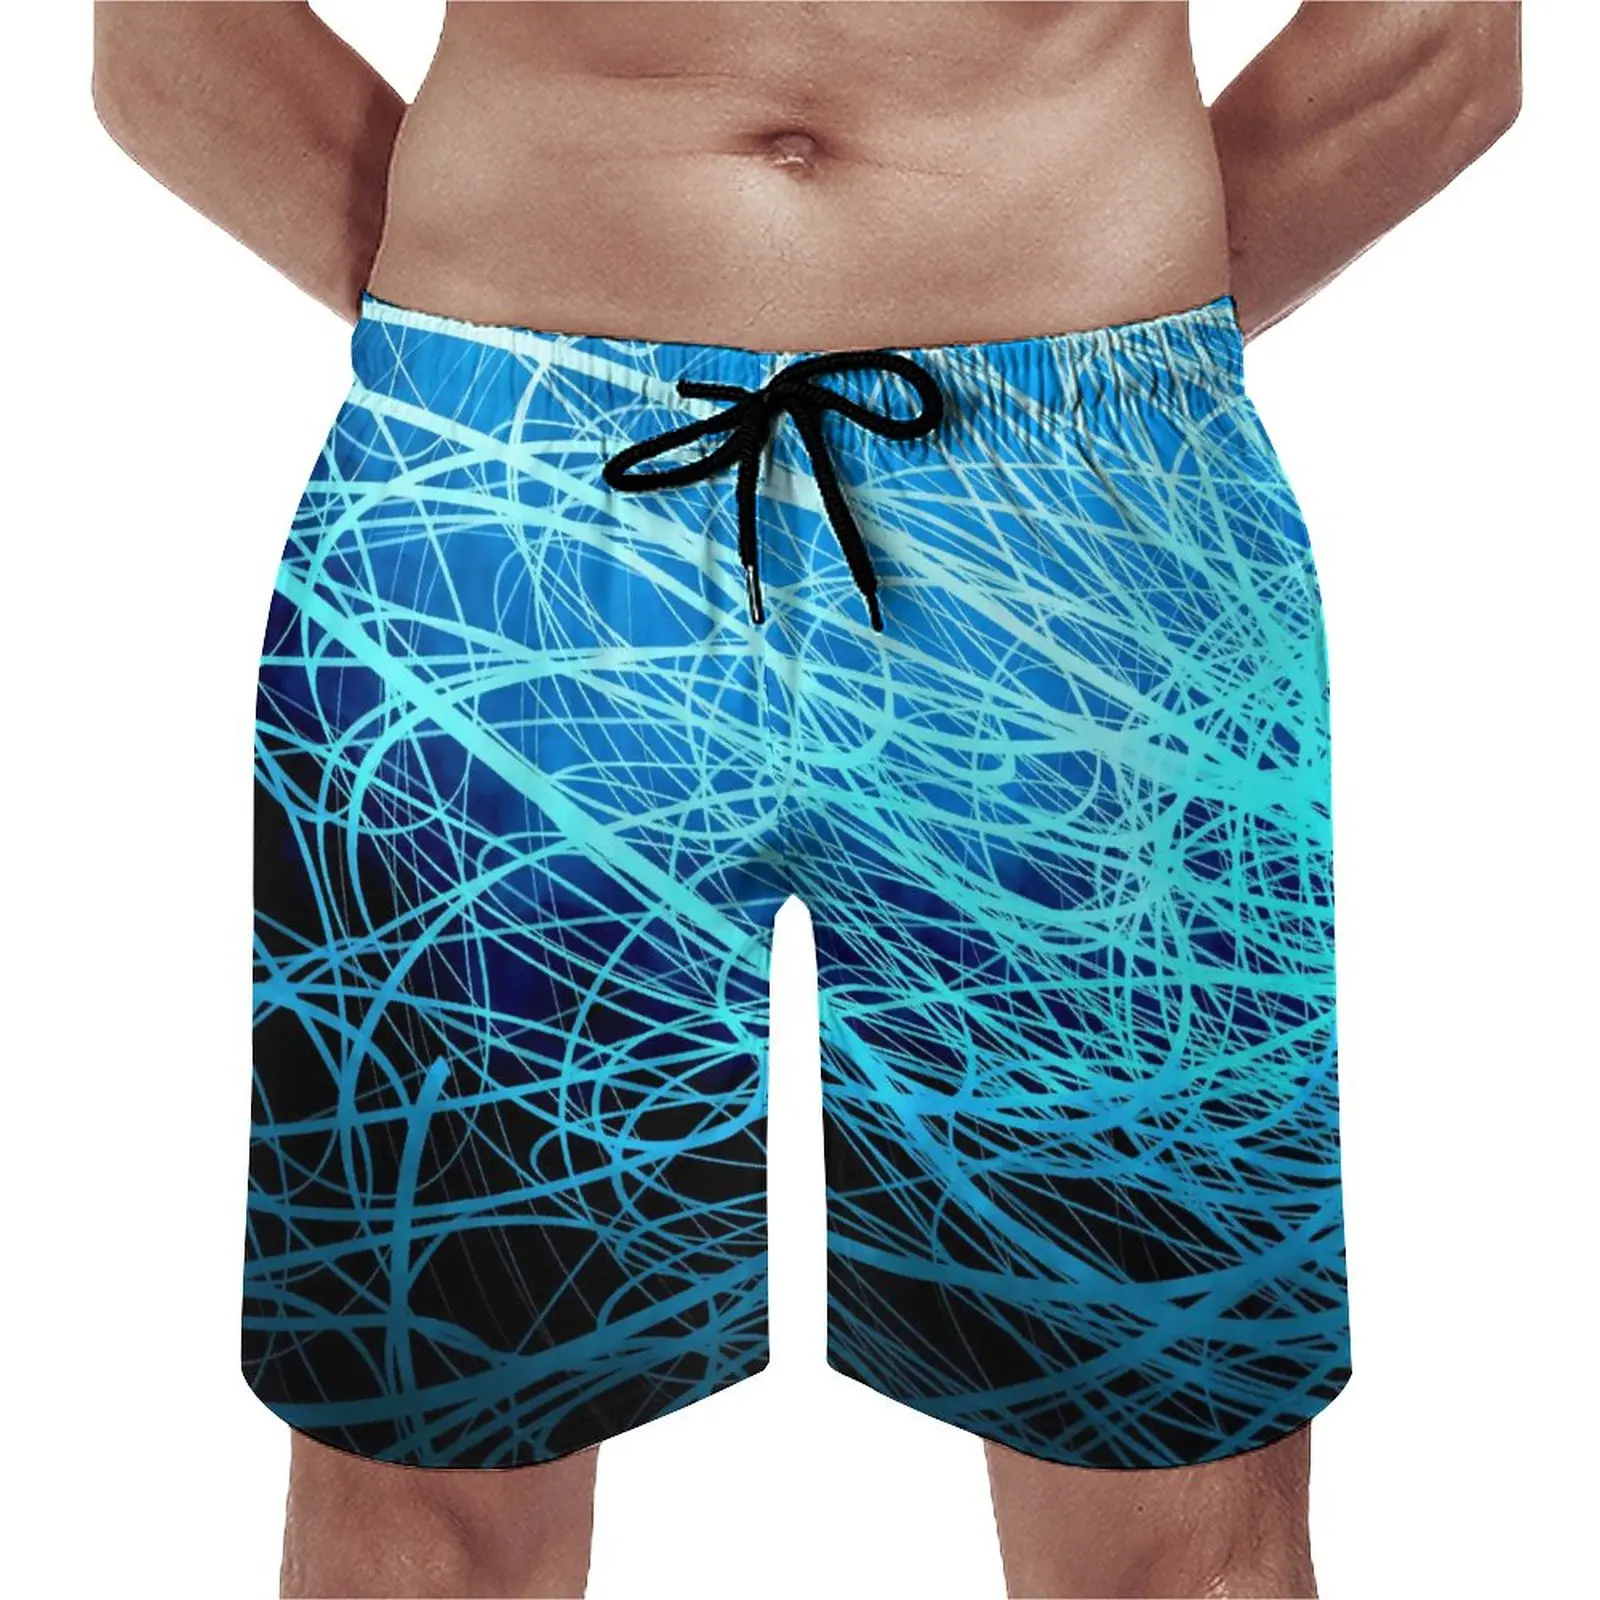 

Шорты для плавания мужские с абстрактным принтом, модные короткие штаны, спортивная одежда, удобные плавки с рисунком, синие полоски, на лето